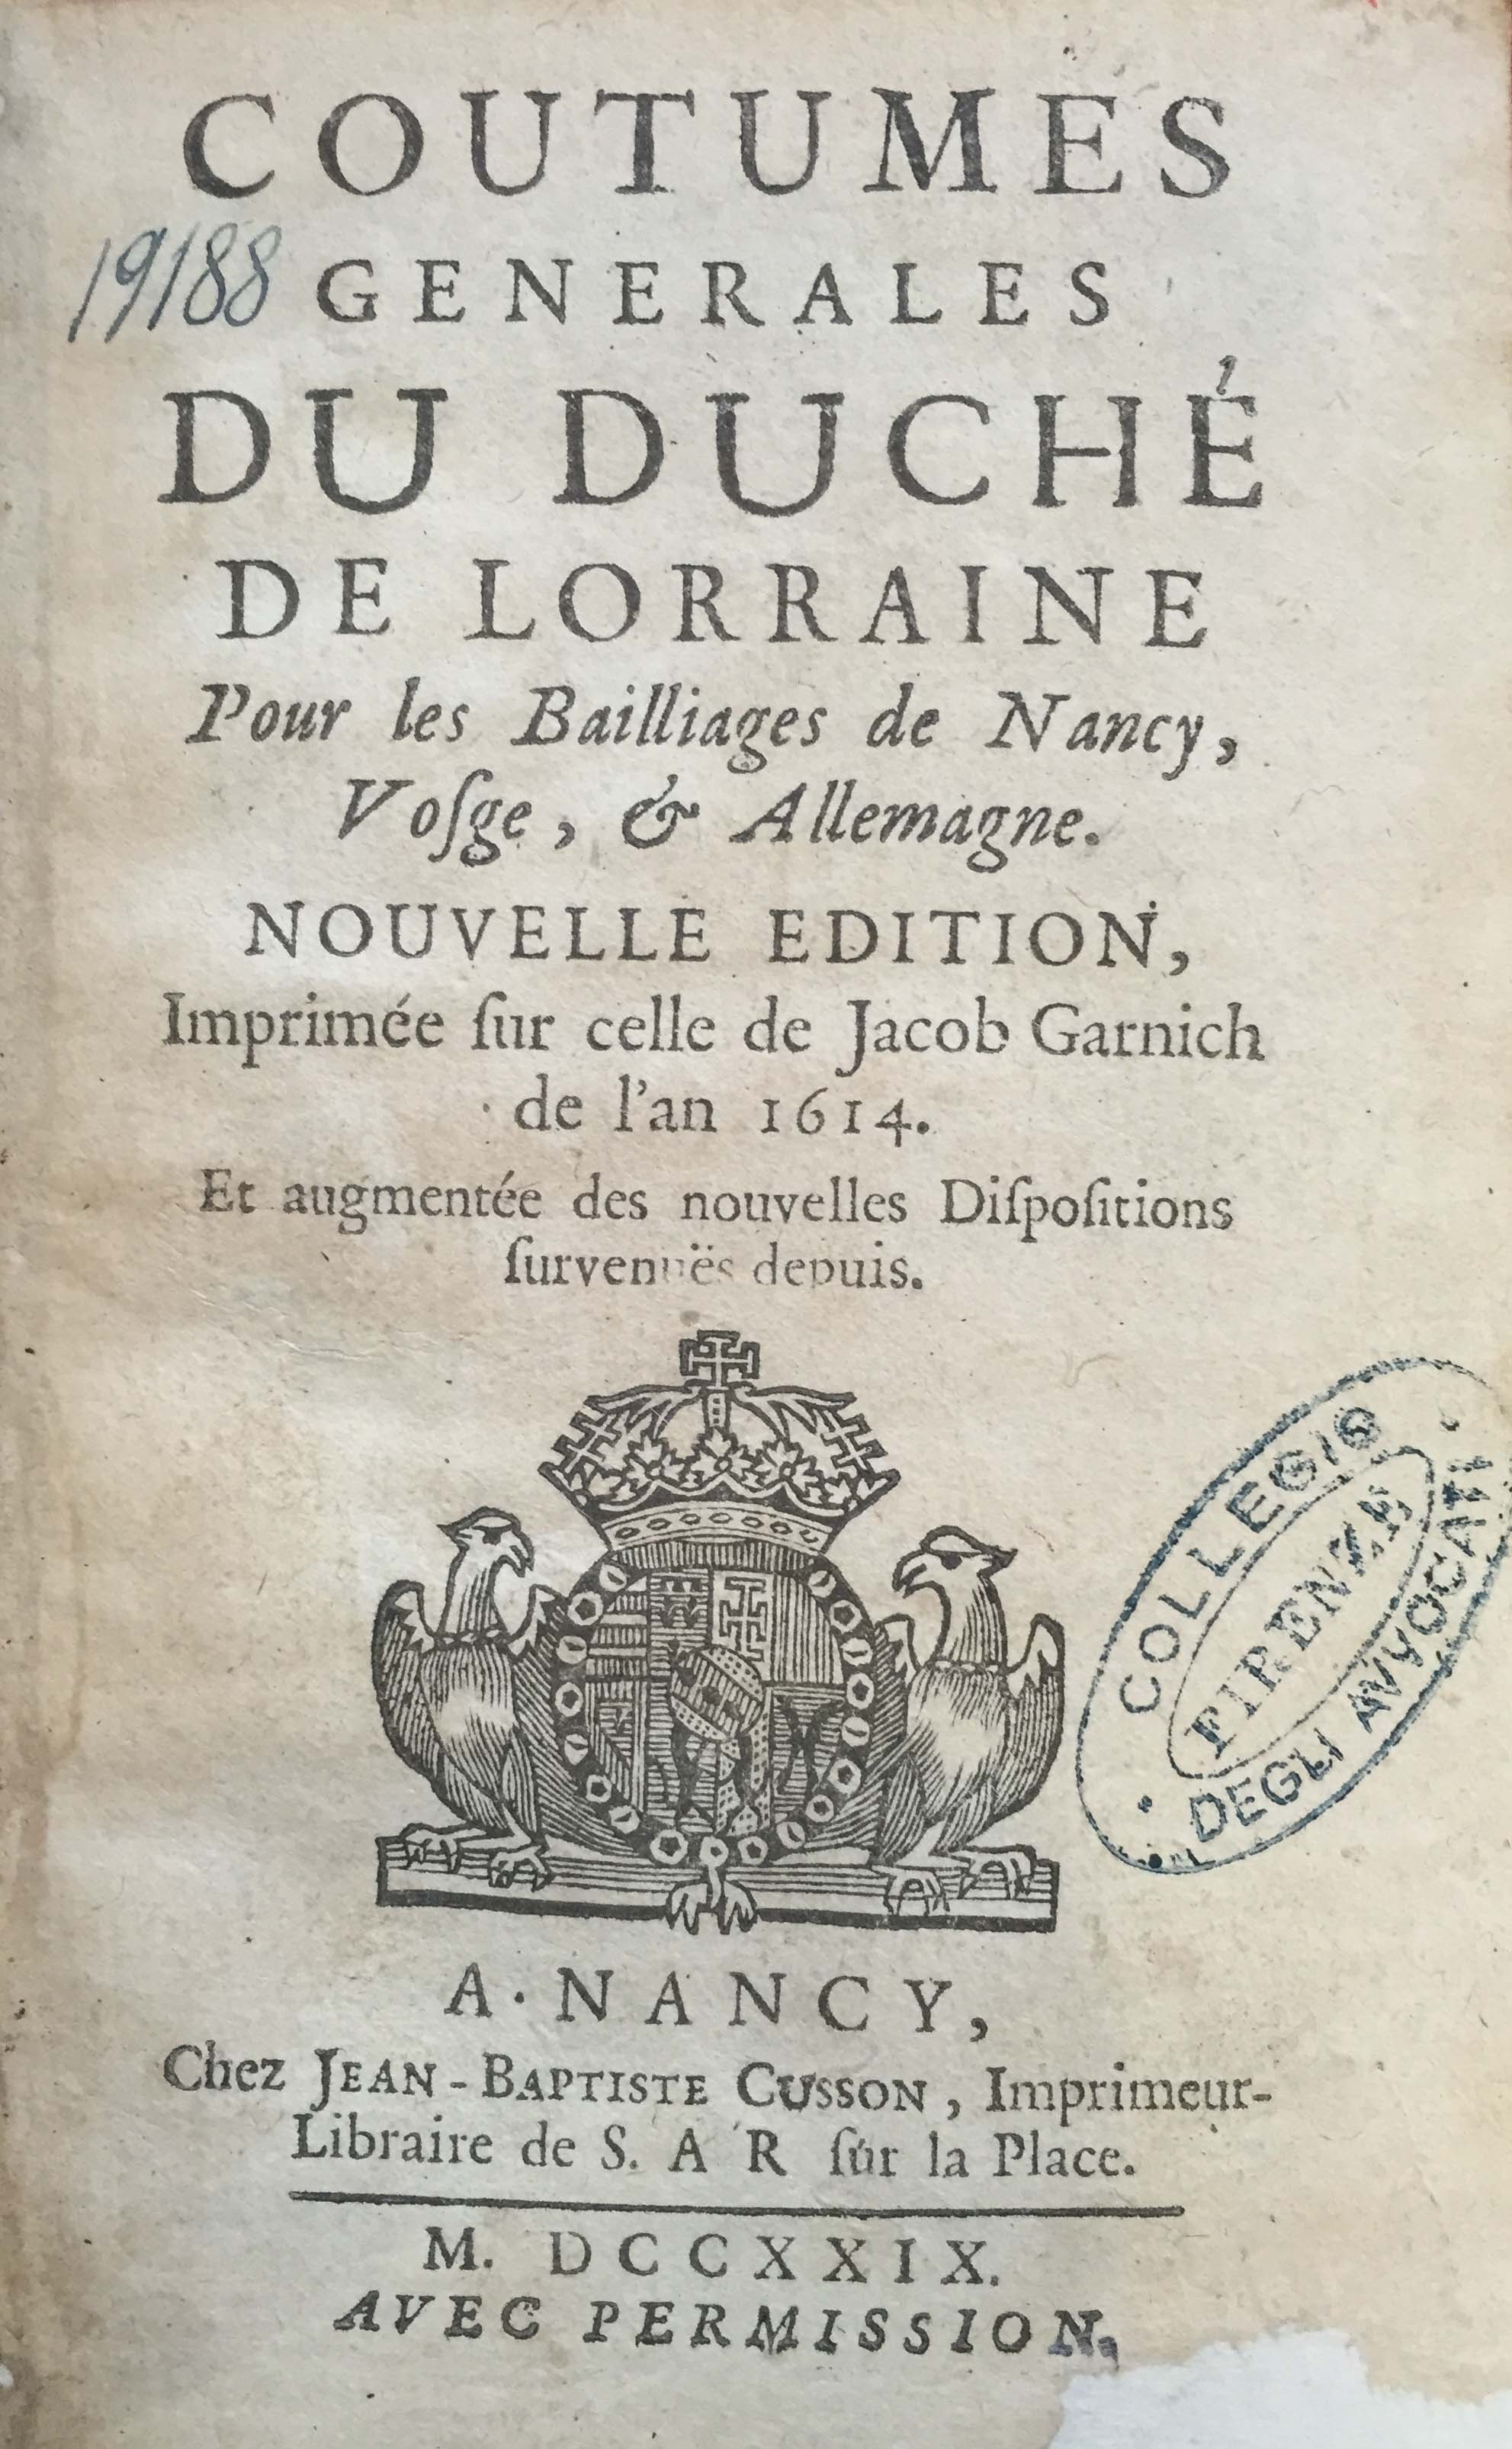 Coutumes generales du duché de Lorraine pour les bailliages de Nancy, Vosge, & Allemagne